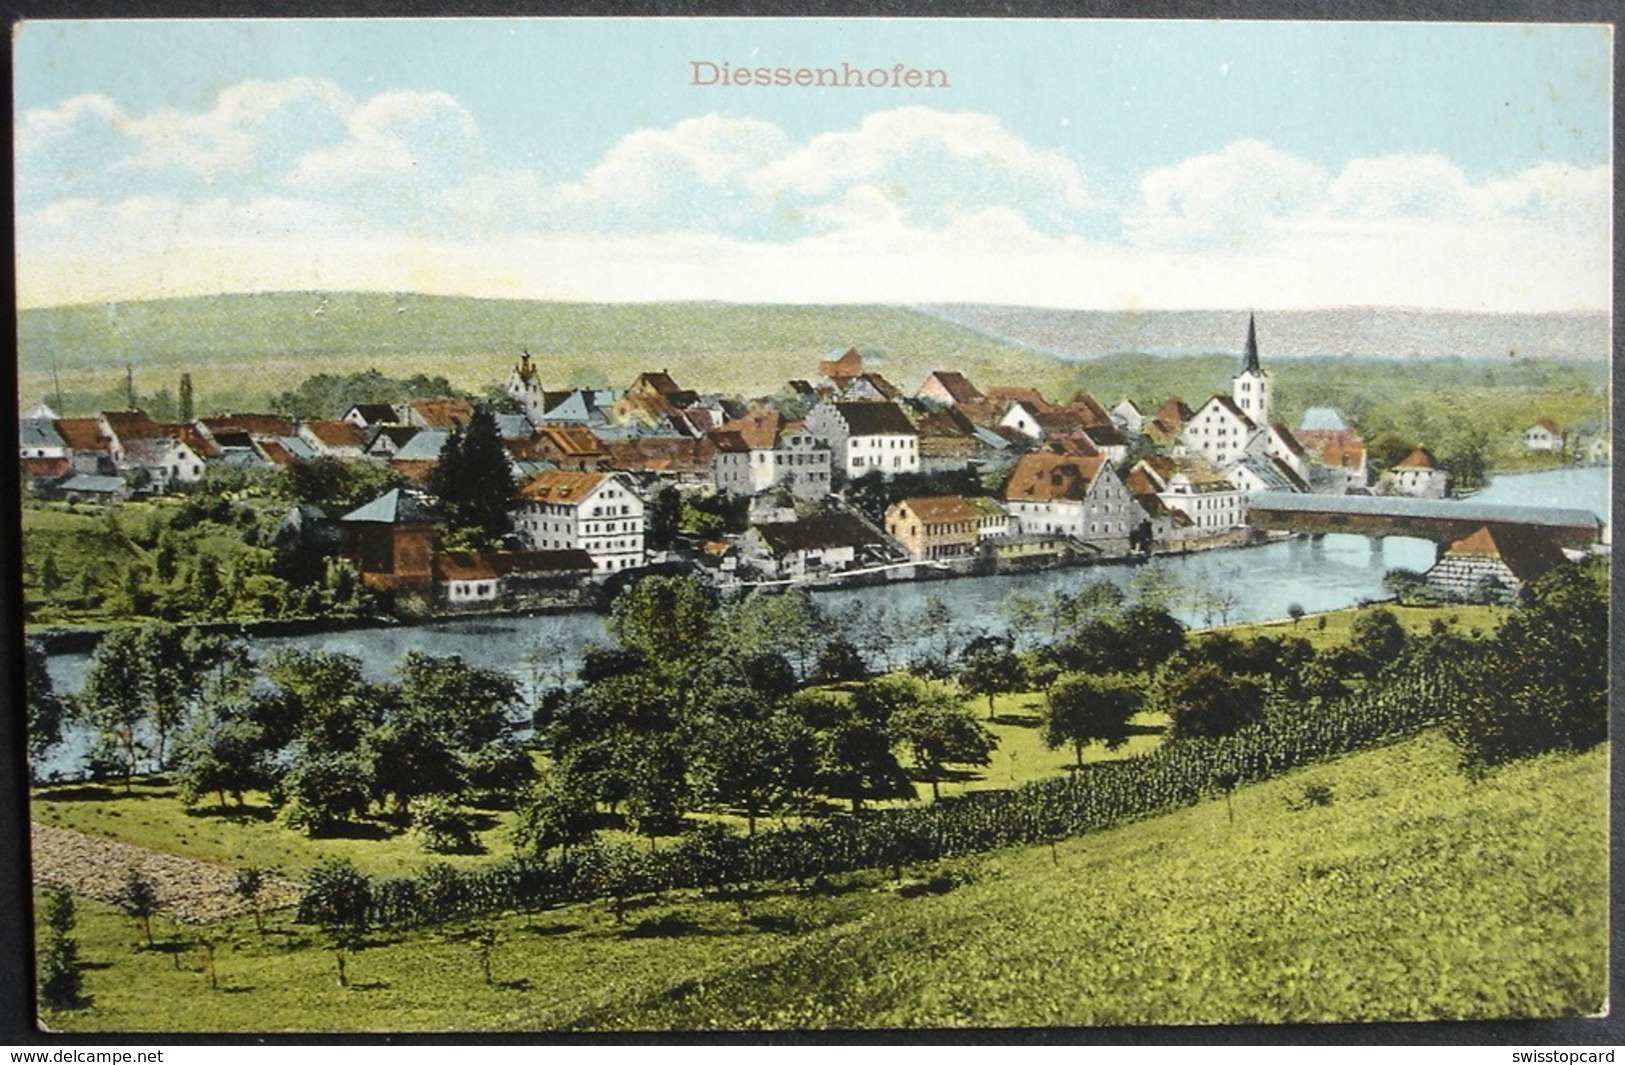 DIESSENHOFEN Gel. 1915 Bahnpost N. Tenigerbad Somvix - Diessenhofen